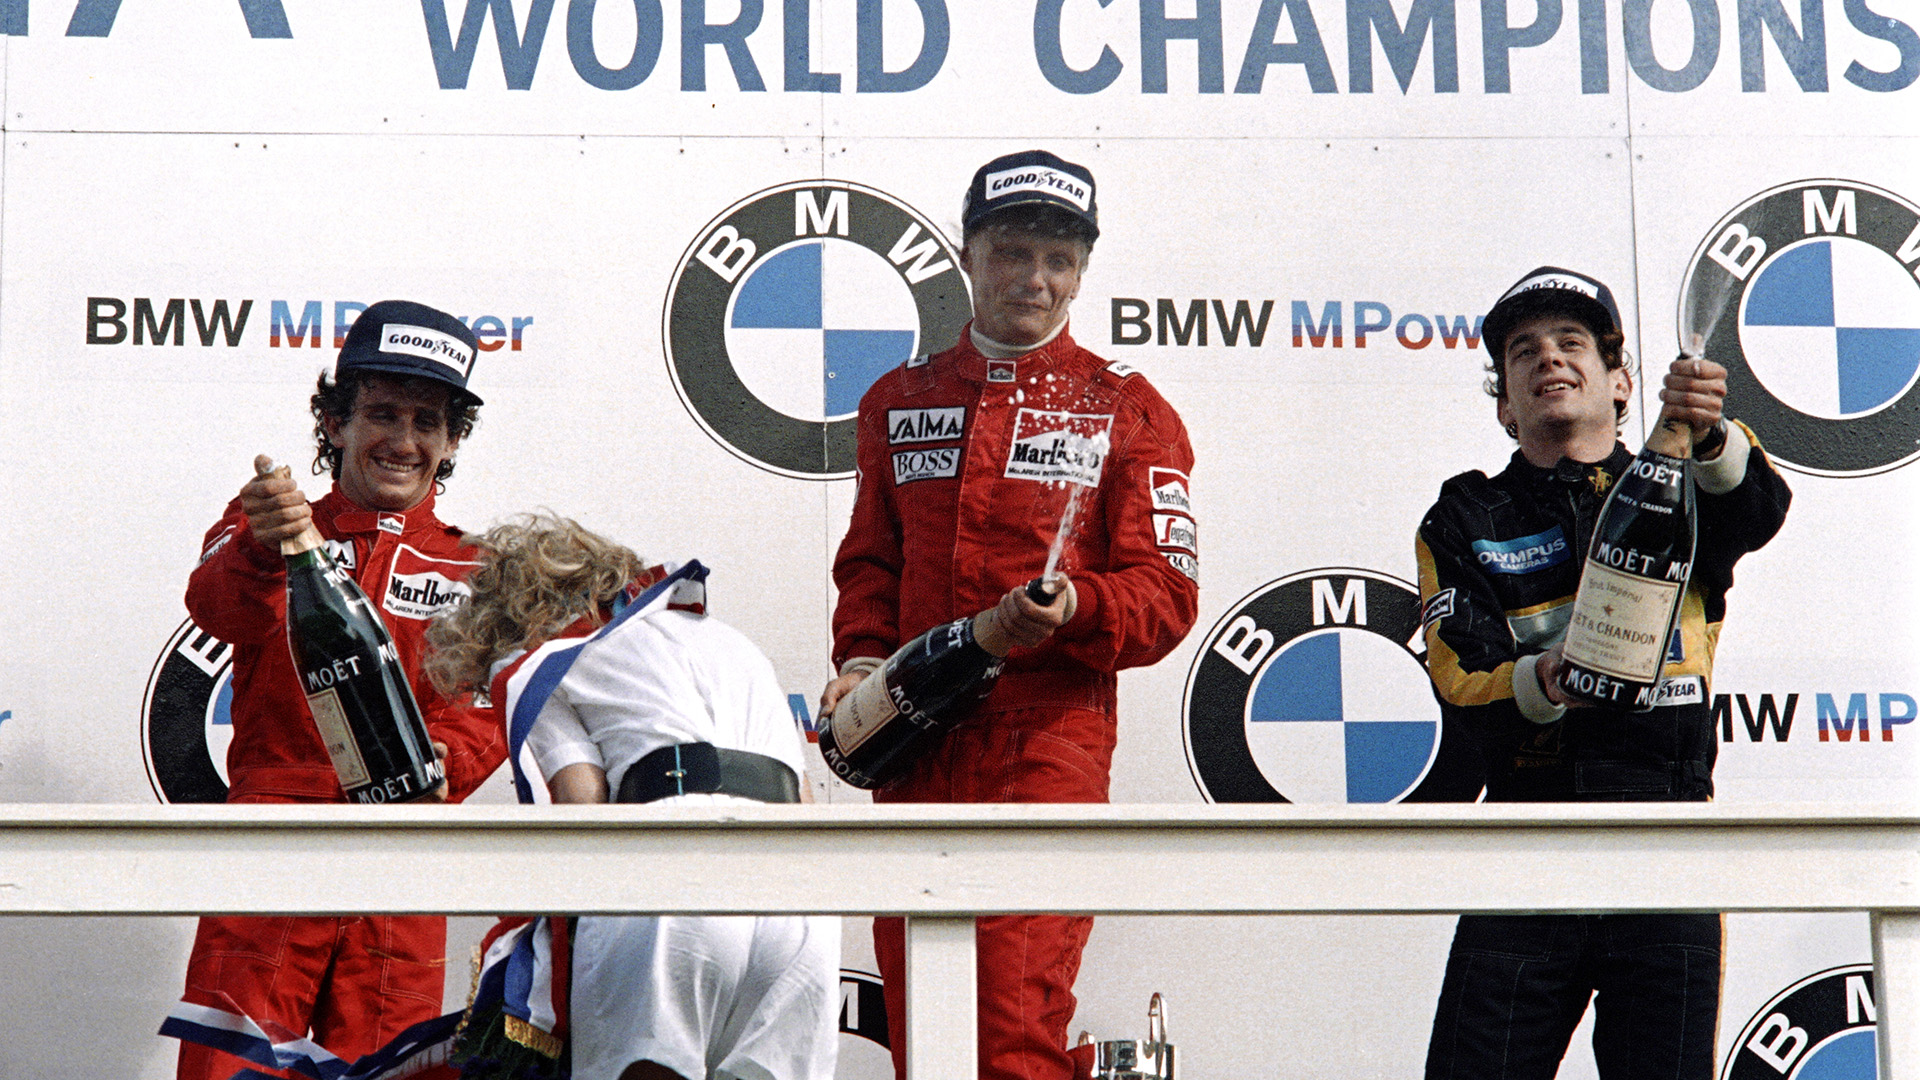 25 de agosto de 1985. Niki Lauda celebra el título mundial tras ganar el Gran Premio de Fórmula 1 de Holanda en Zandvoort, con su compañero de equipo de McLaren, el piloto francés Alain Prost y el brasileño Ayrton Senna (Lotus)